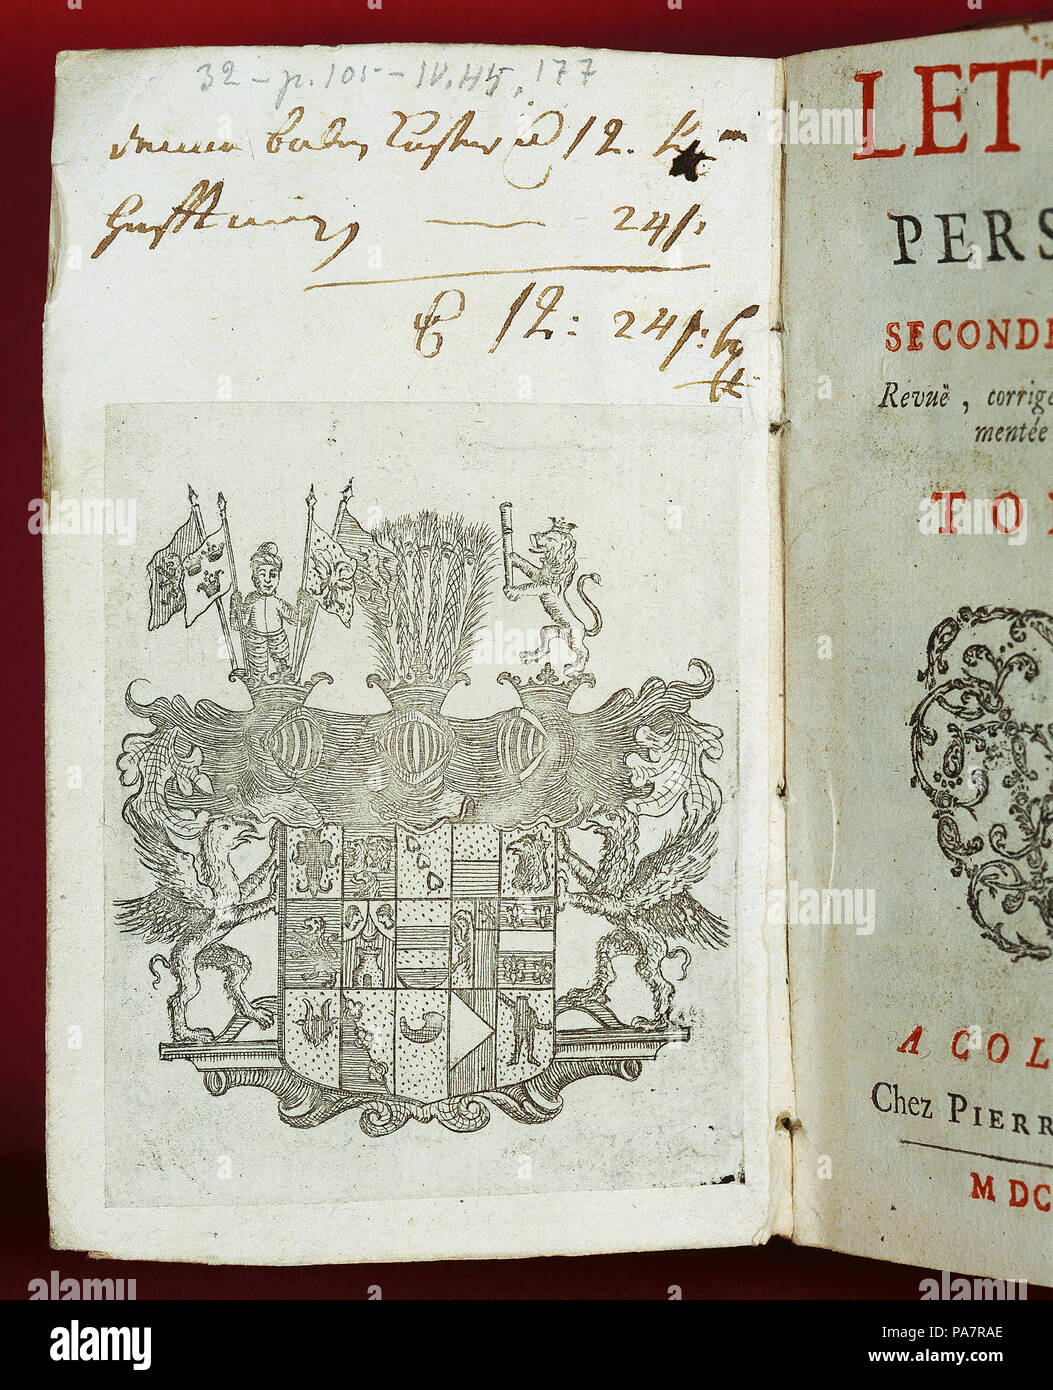 1 "Persiska brev" av Montesquieu - Skoklosters slott - 65104 Stock ...